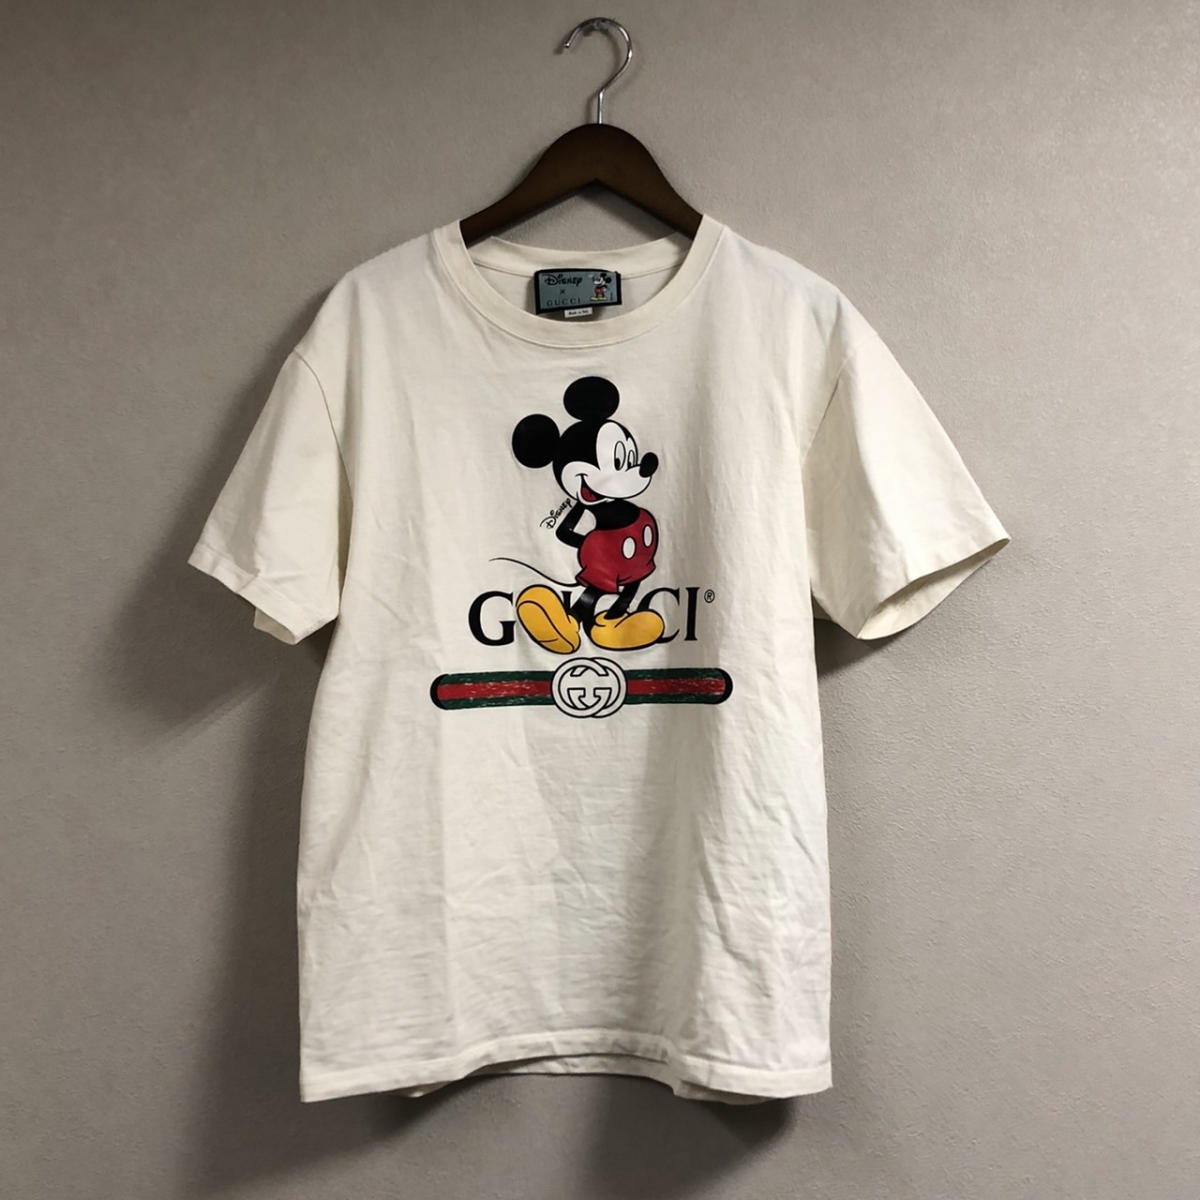 グッチの2020年SS ×Disney・ディズニー 565806 XJB66 ミッキーマウスプリントTシャツの買取実績です。